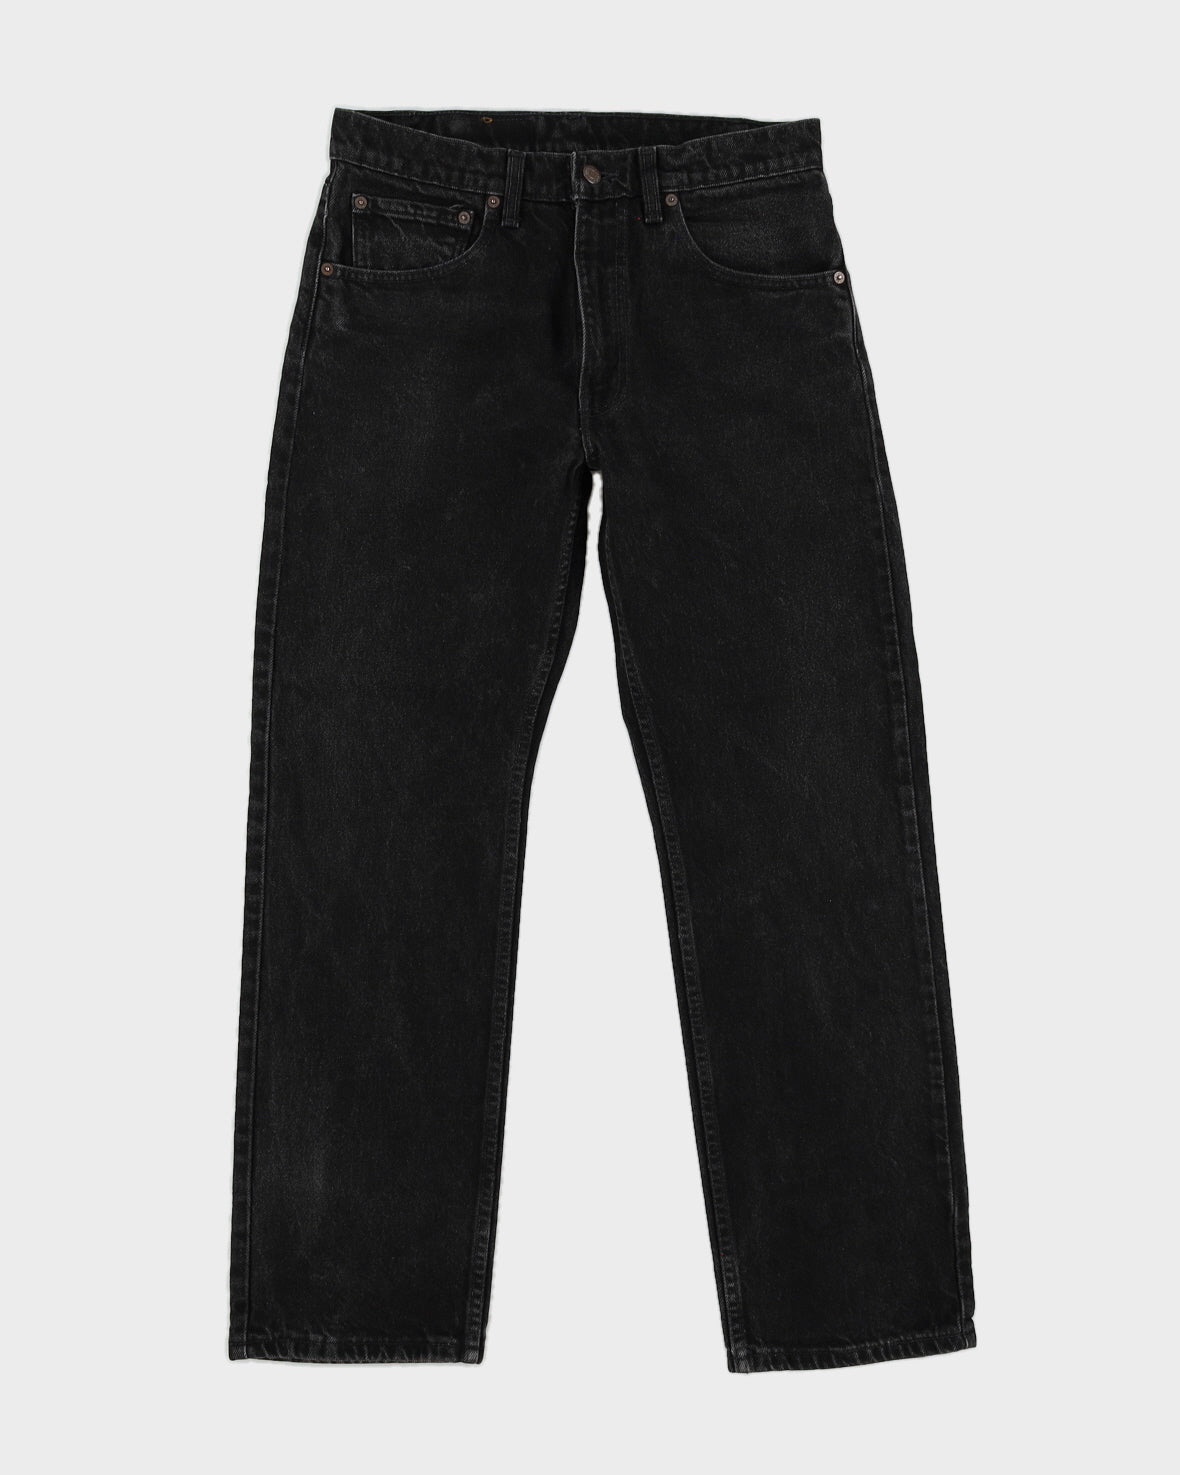 Vintage 80s 505 Levi's Black Jeans - W32 L30